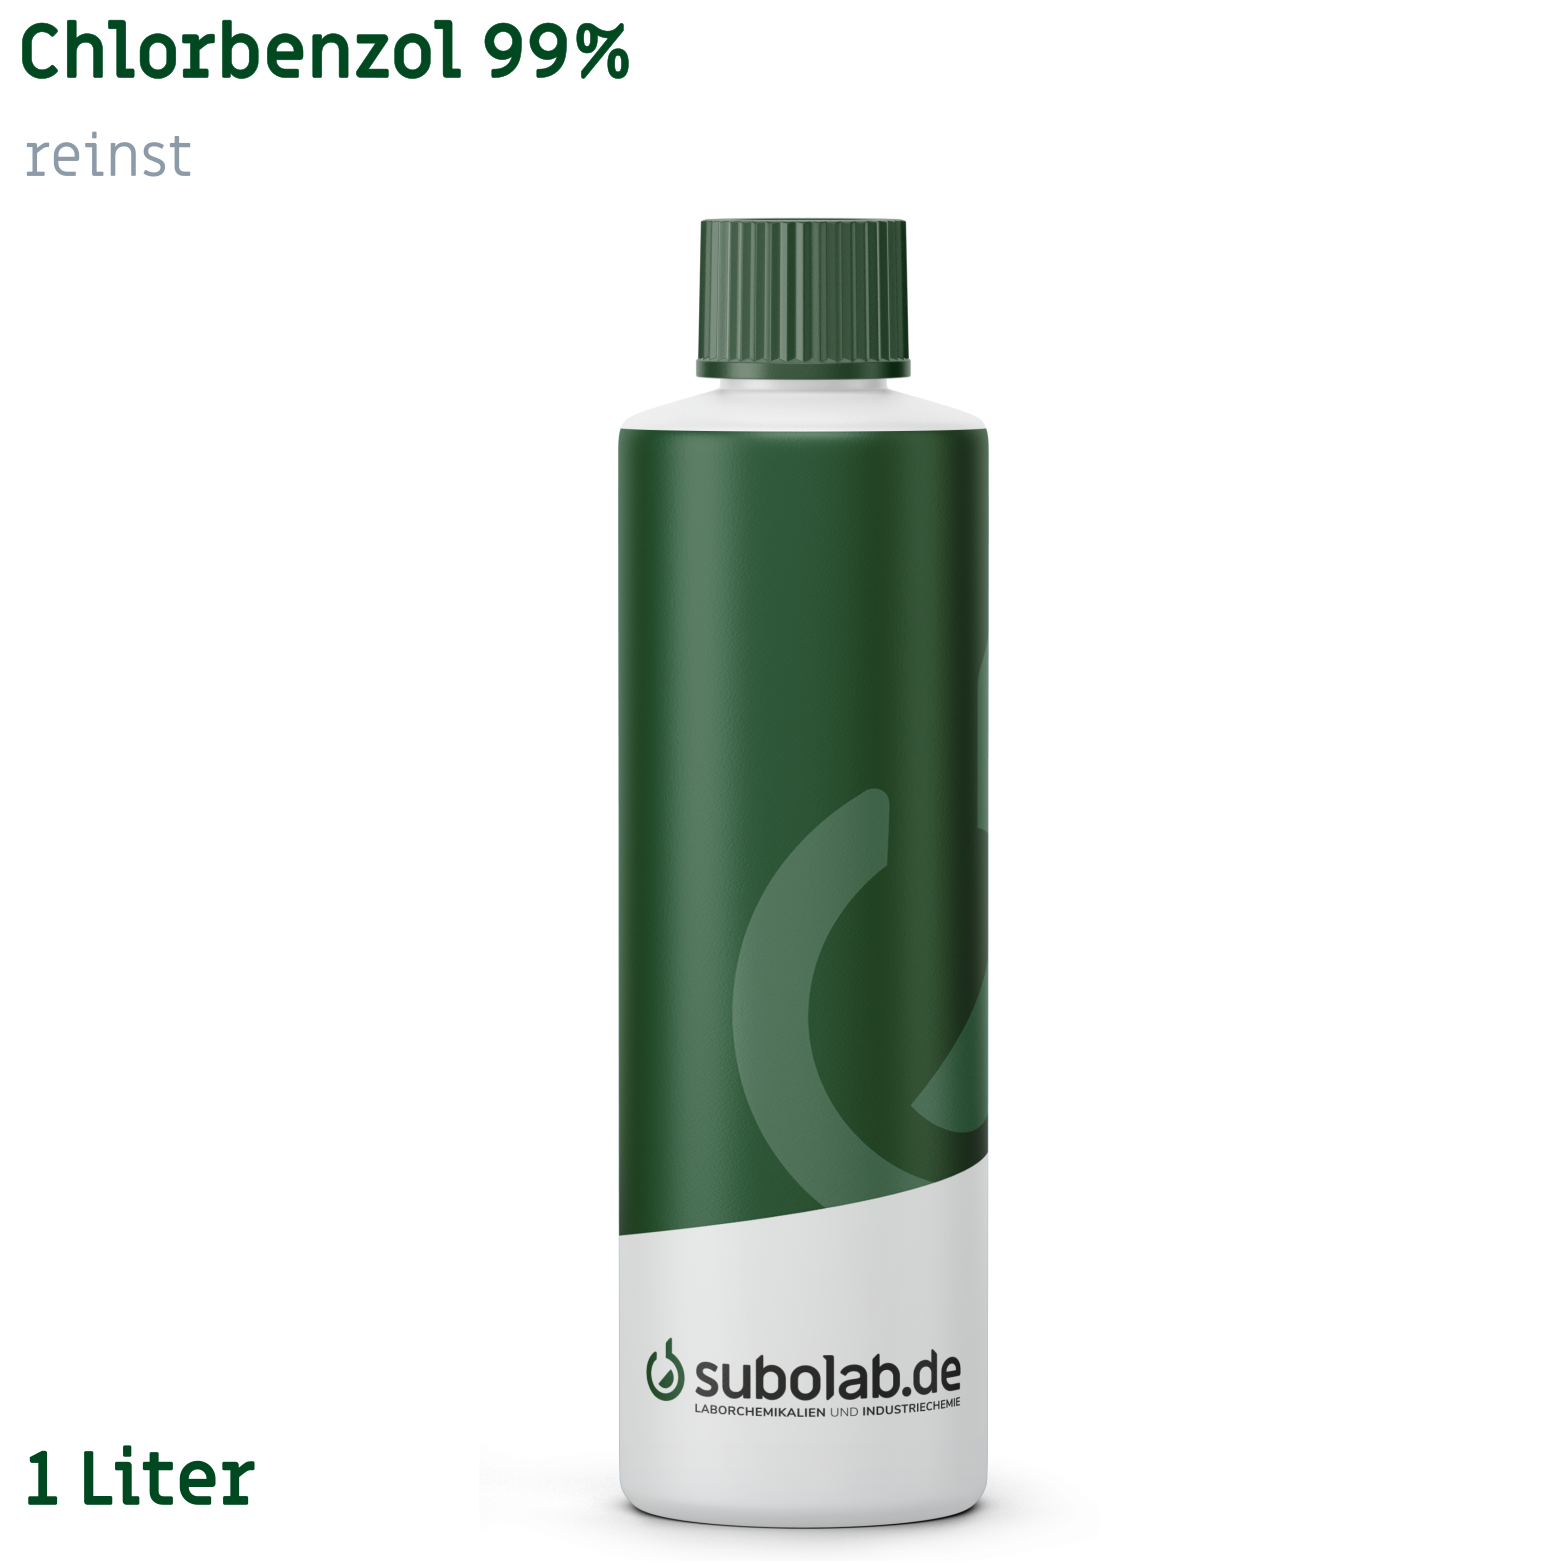 Bild von Chlorbenzol 99% reinst (1 Liter)